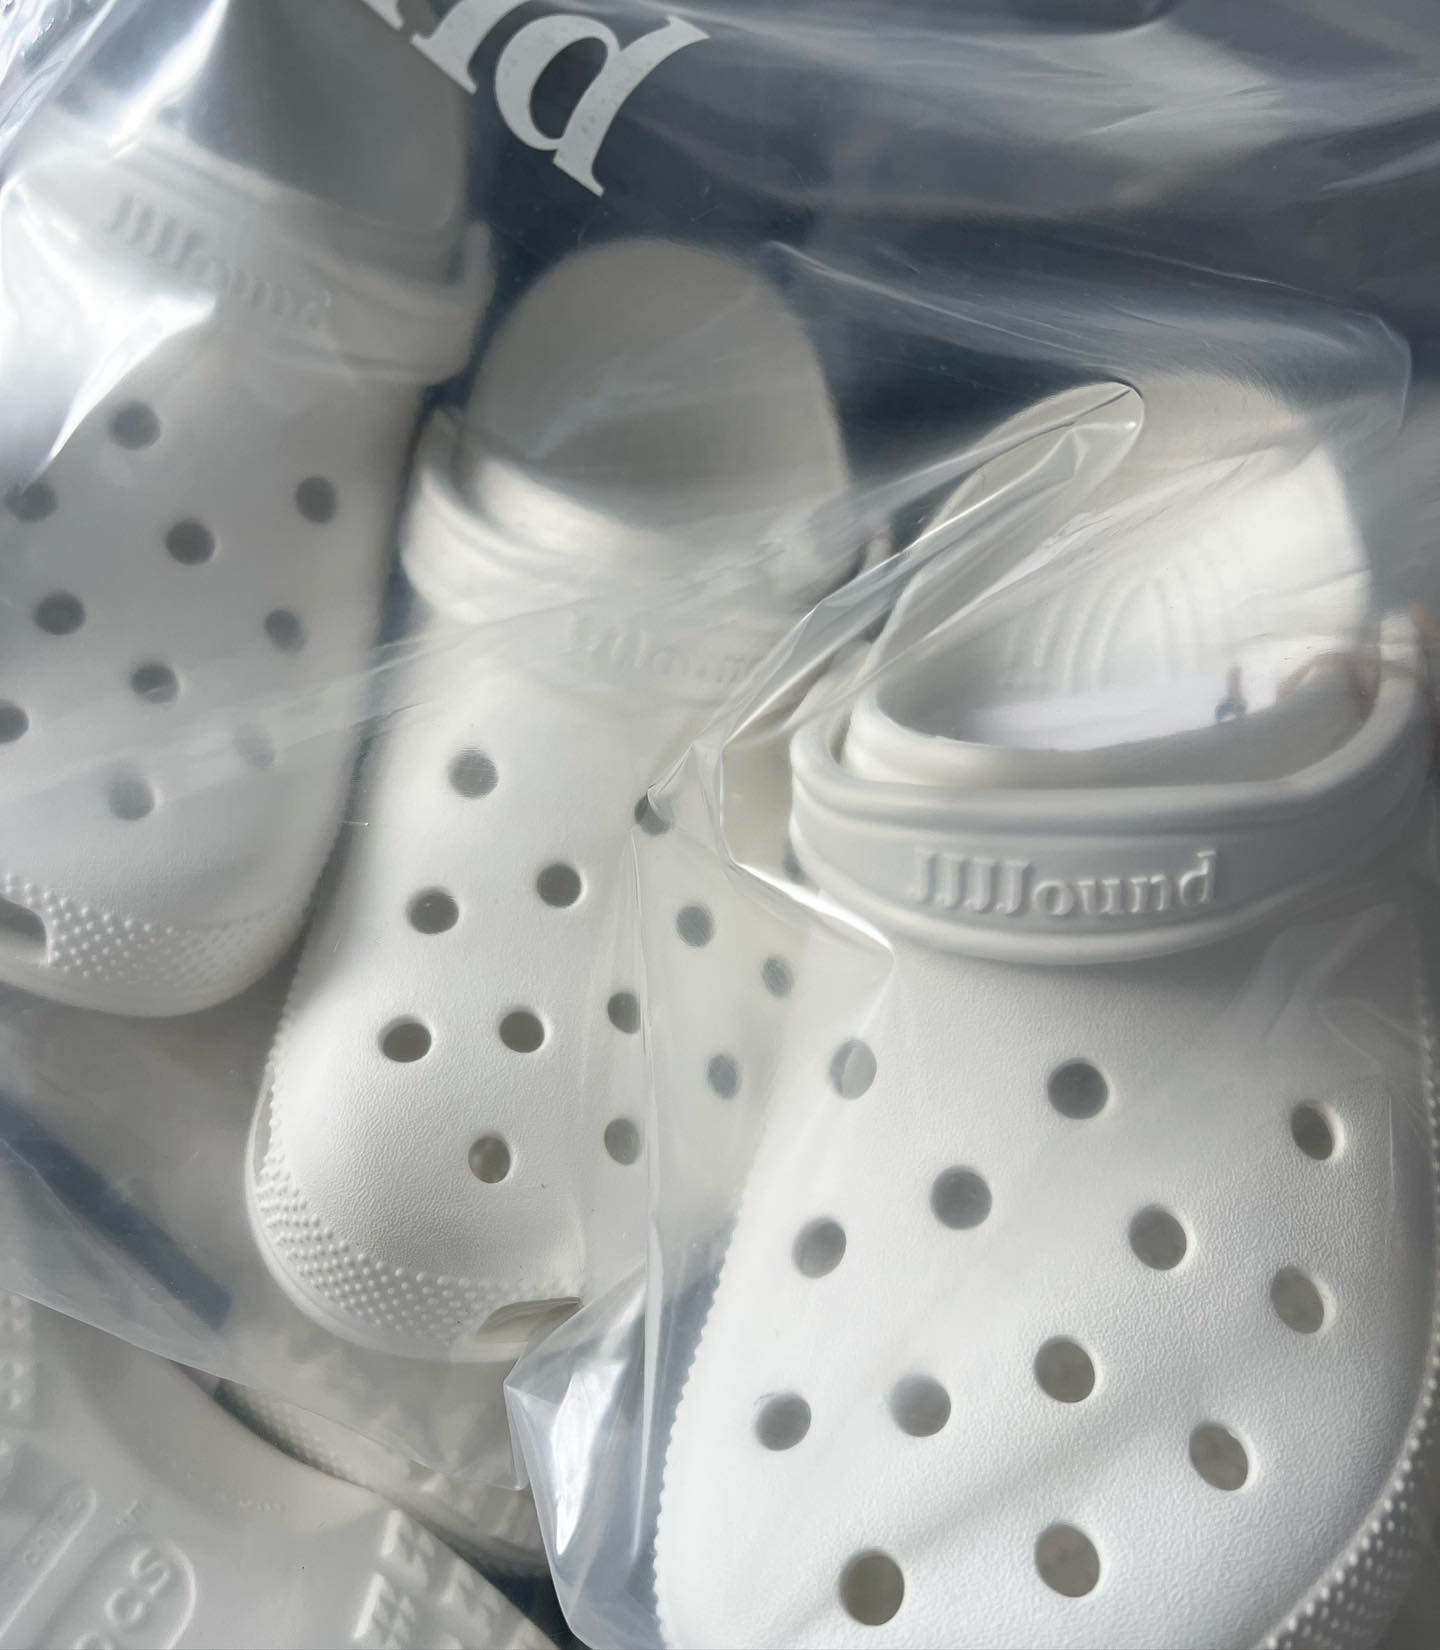 JJJJound & Crocs' all-white clog collab